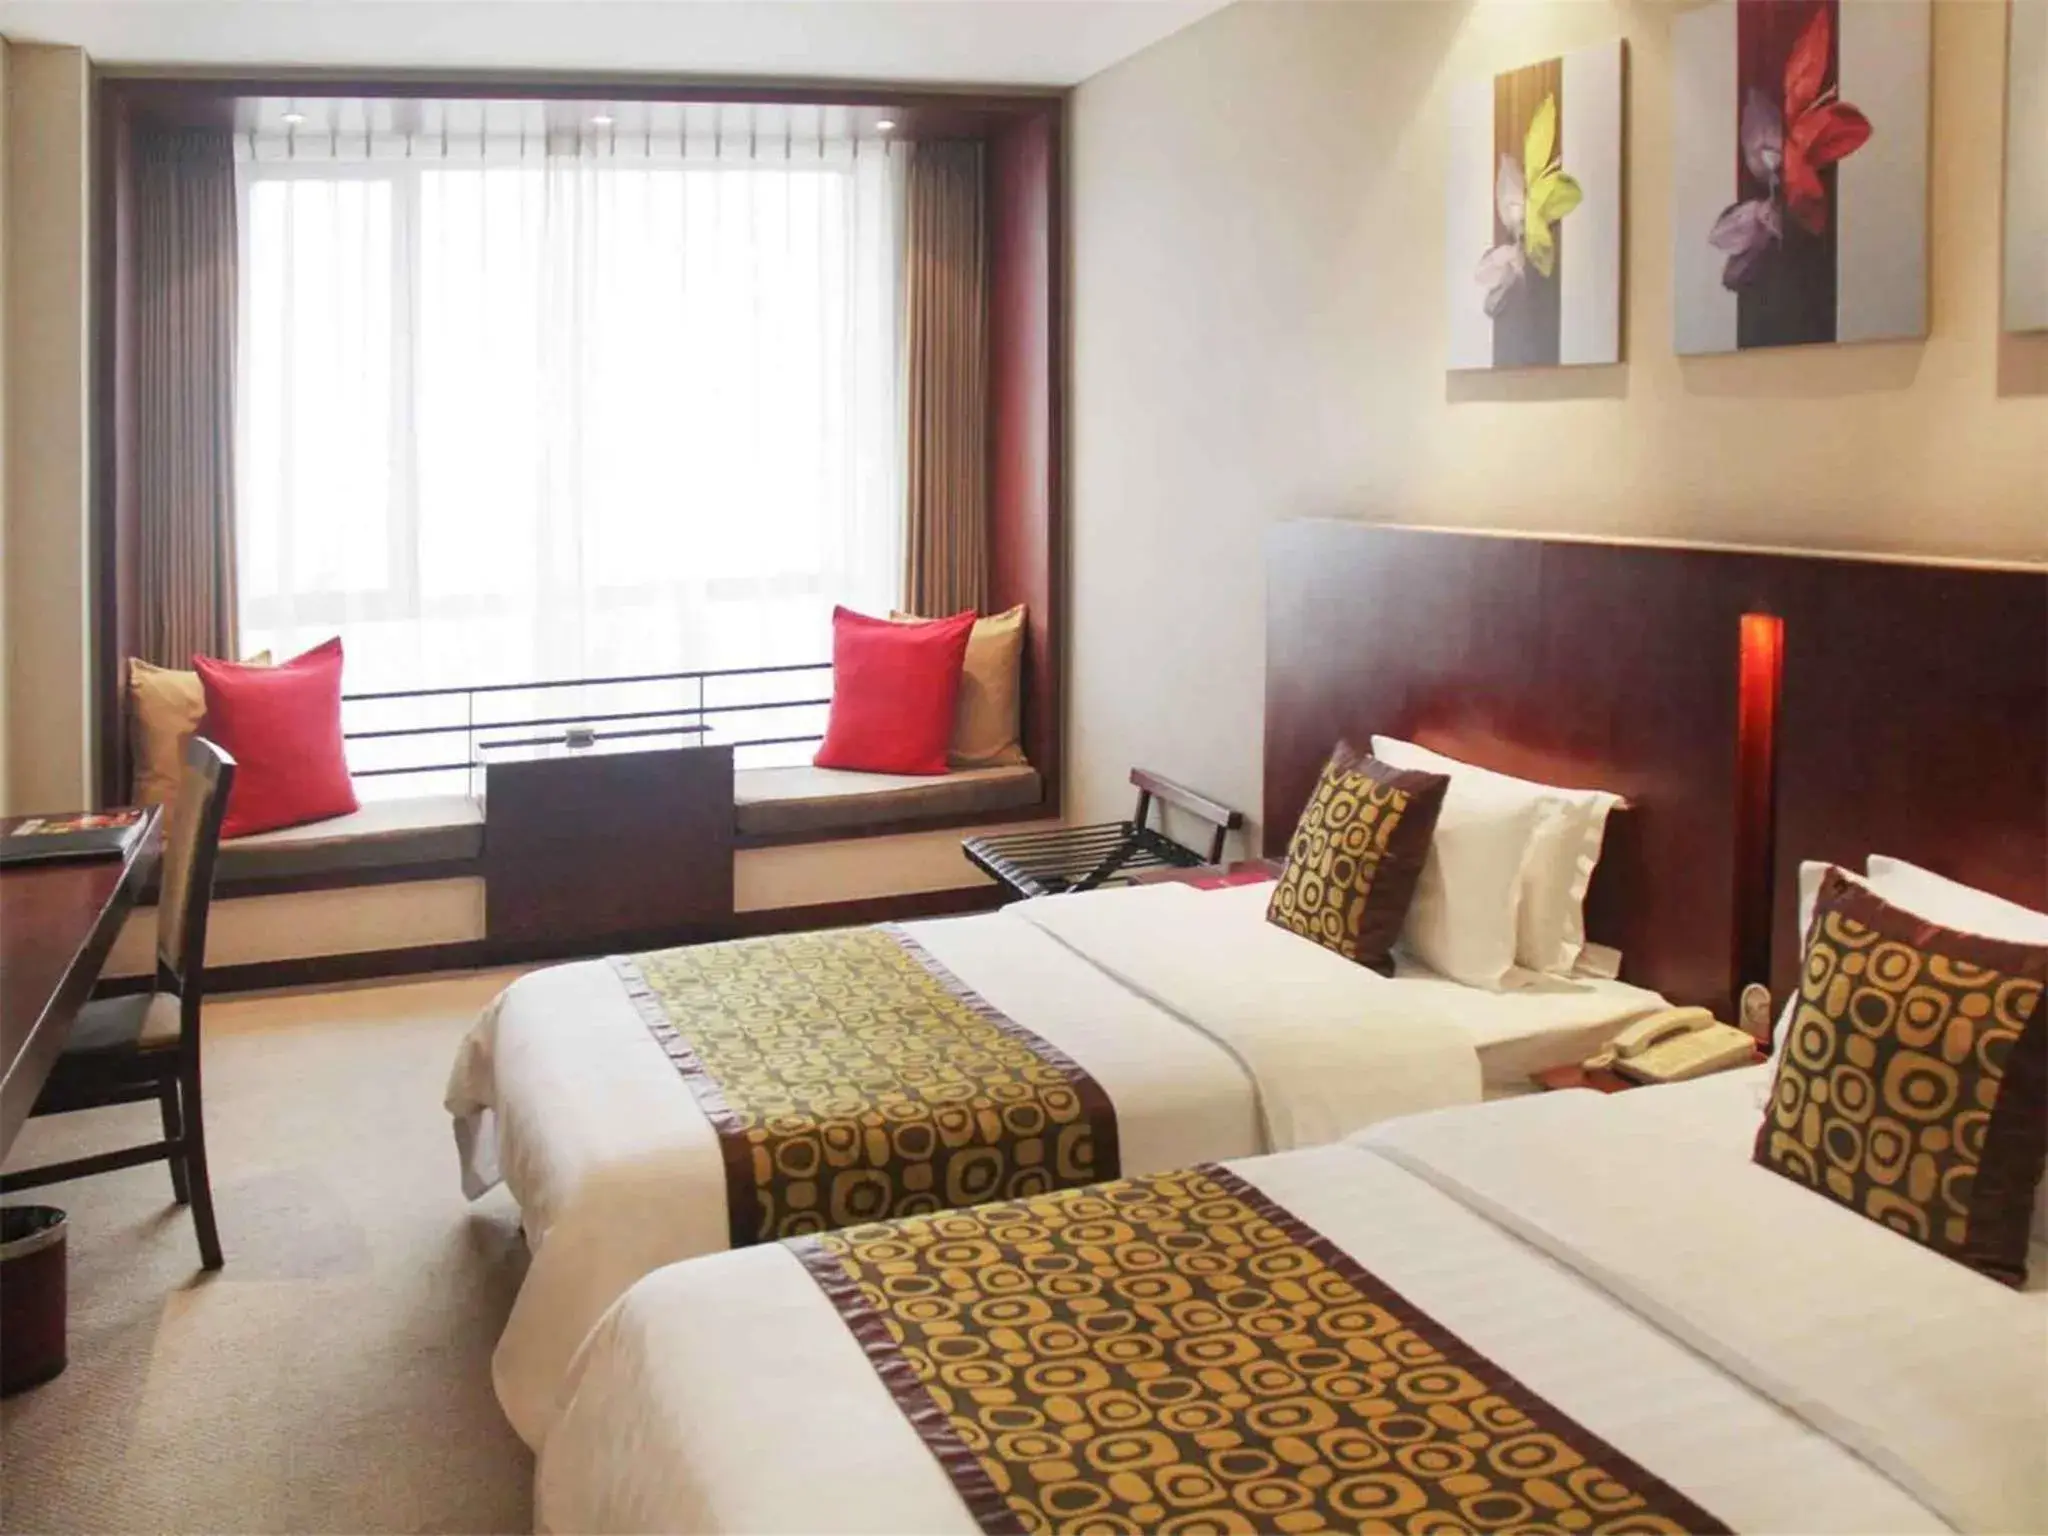 Bed, Room Photo in Mercure Wanshang Beijing Hotel